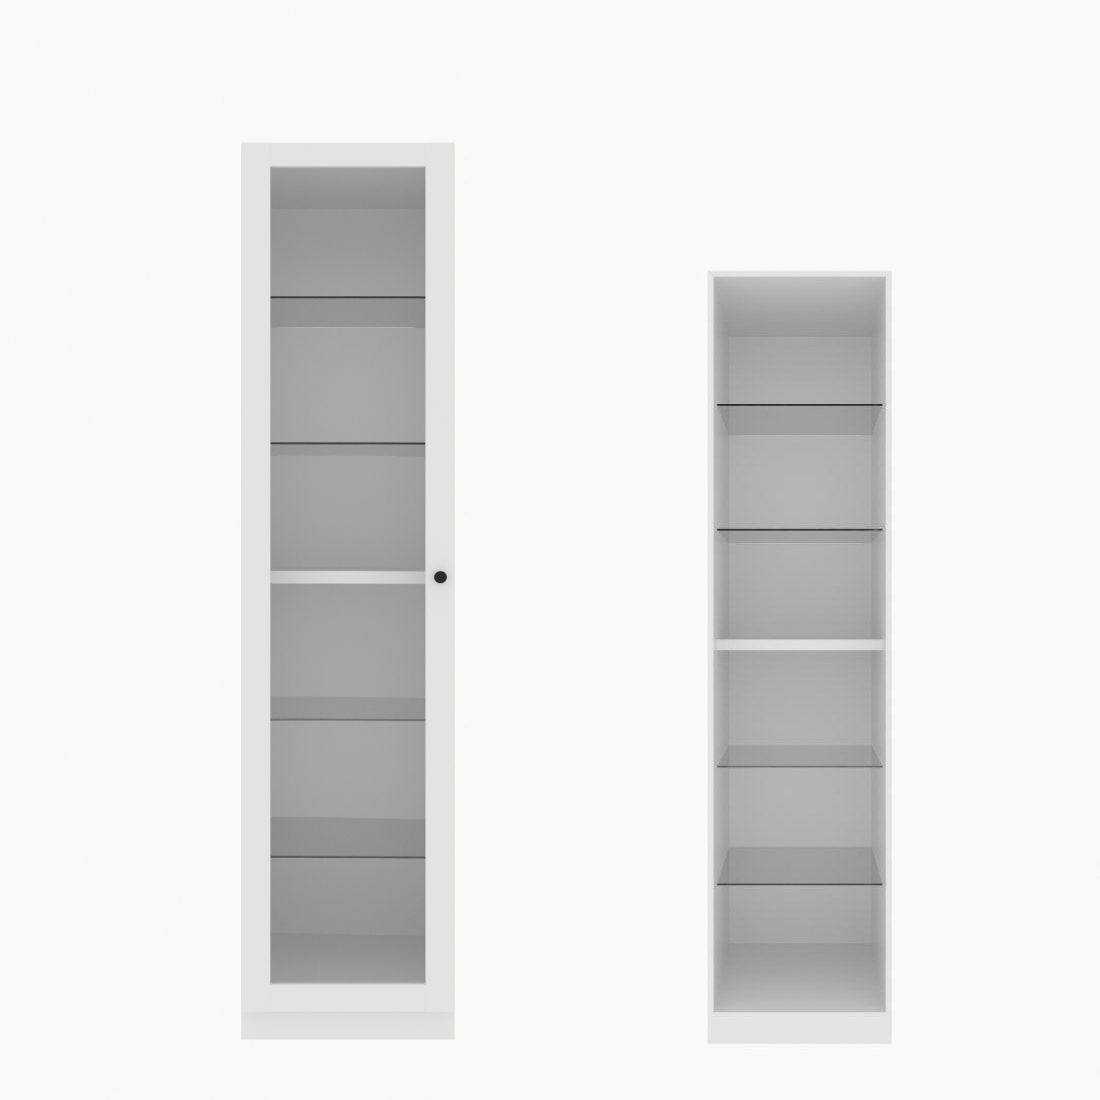 ตู้เสื้อผ้า ตู้โชว์ชั้นกระจก OP-H (หน้าบานเปิดซ้าย) ขนาด 50 ซม. รุ่น Blox สีขาว&กระจกใส01